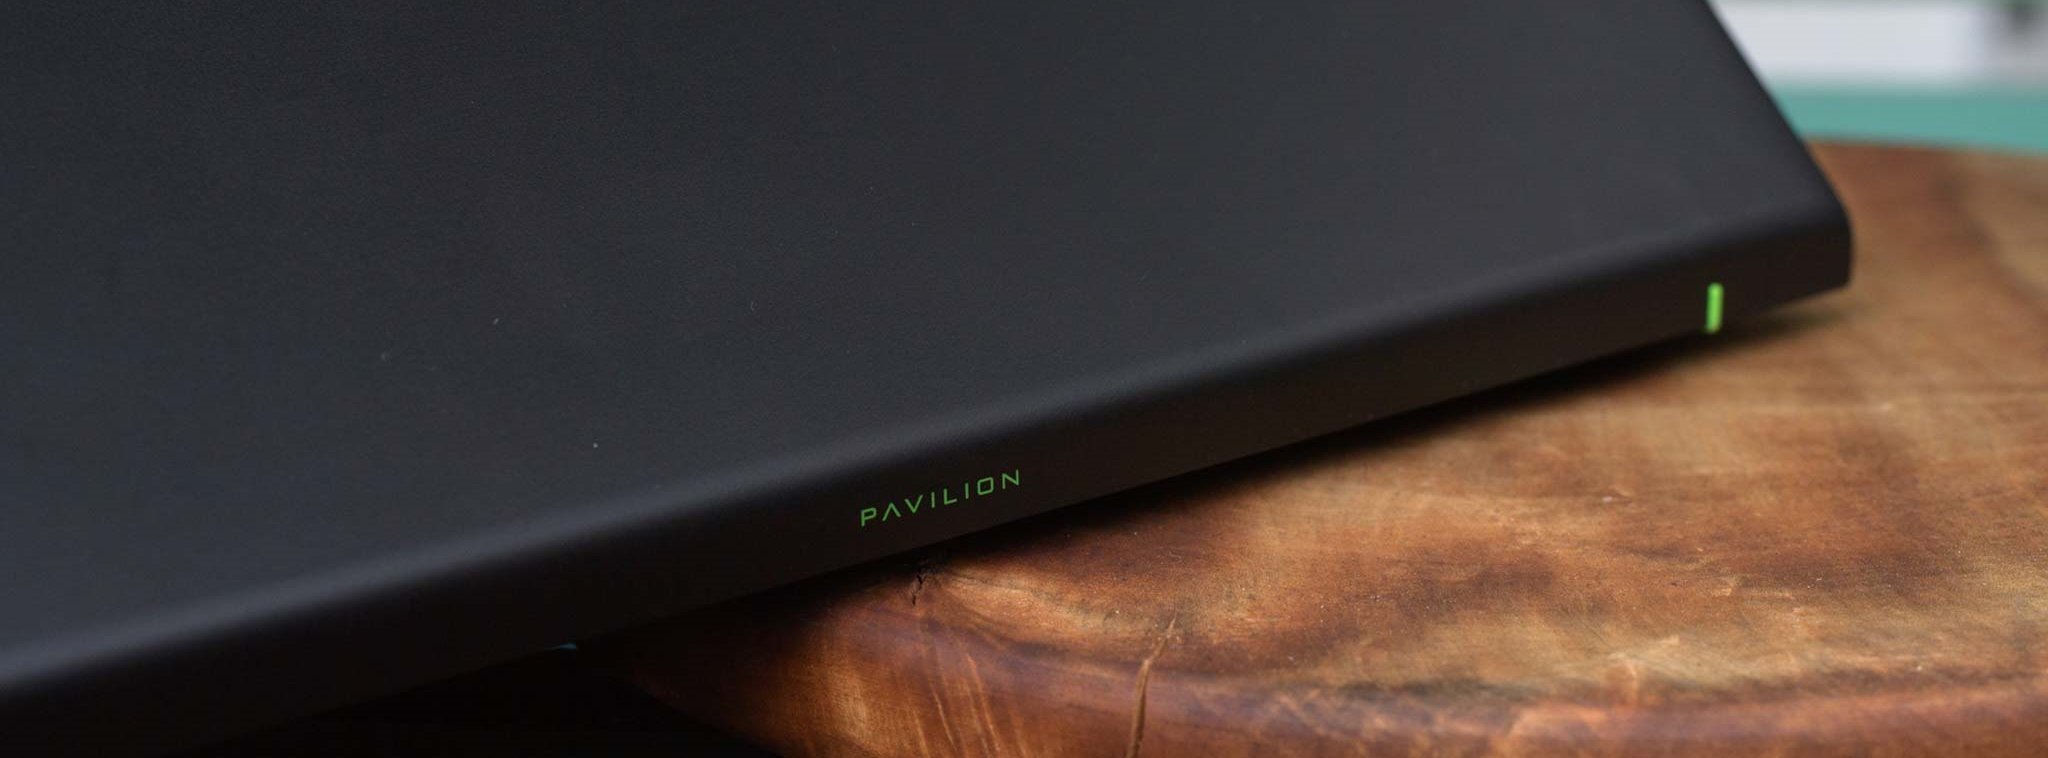 Đánh giá laptop HP Pavilion Power 15 – Mỏng nhẹ, thể hiện chất game, màn hình 4K [HOT]